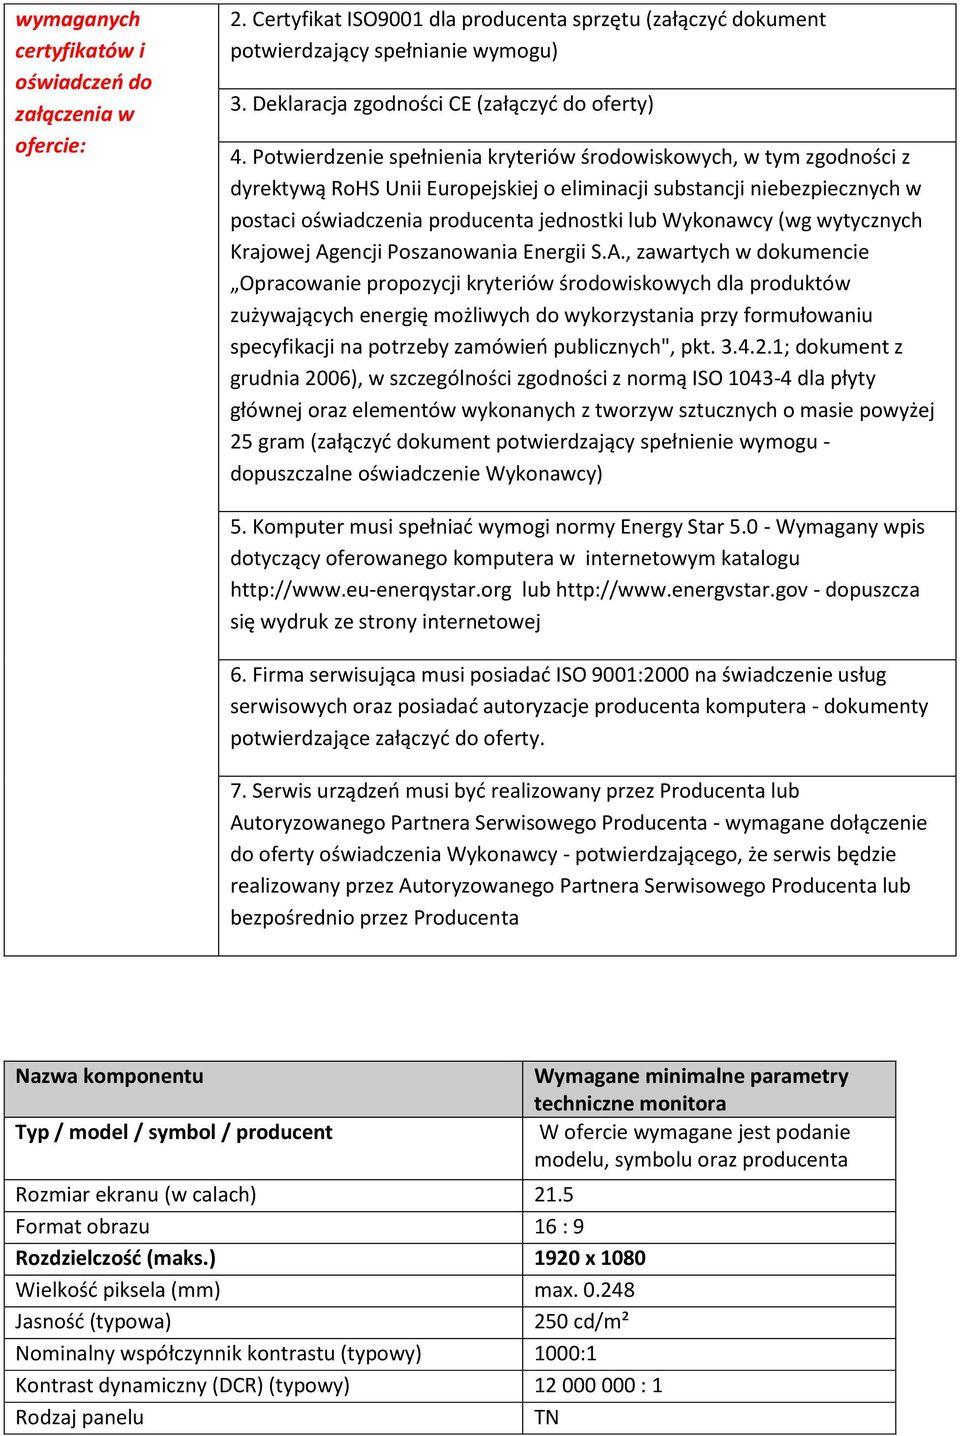 Potwierdzenie spełnienia kryteriów środowiskowych, w tym zgodności z dyrektywą RoHS Unii Europejskiej o eliminacji substancji niebezpiecznych w postaci oświadczenia producenta jednostki lub Wykonawcy